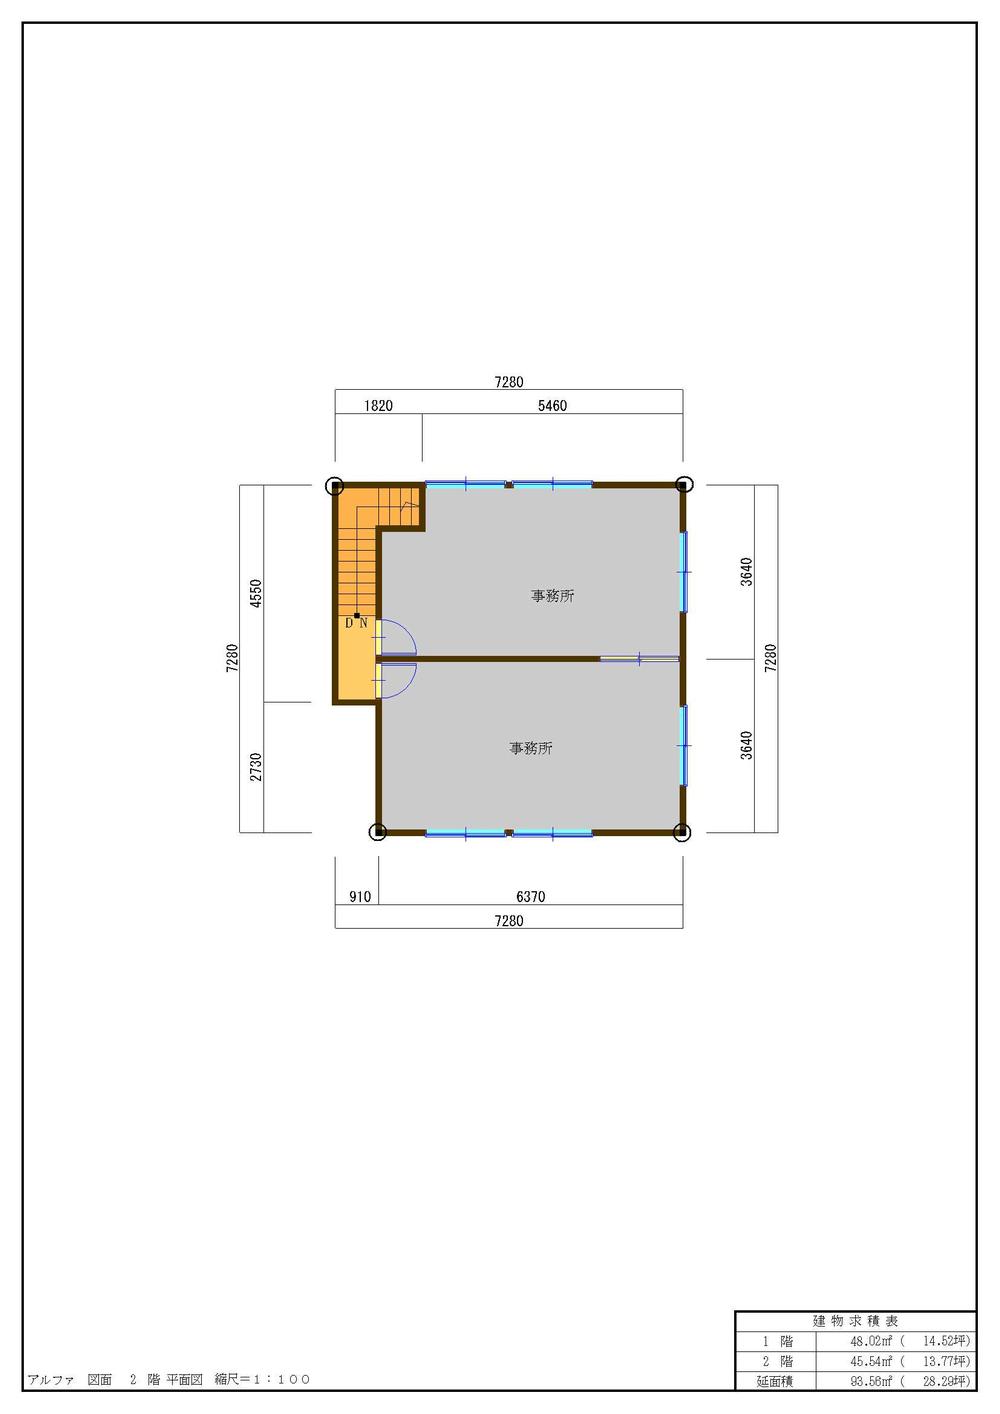 Floor plan. 8.2 million yen, 4K, Land area 89.26 sq m , Building area 101.02 sq m